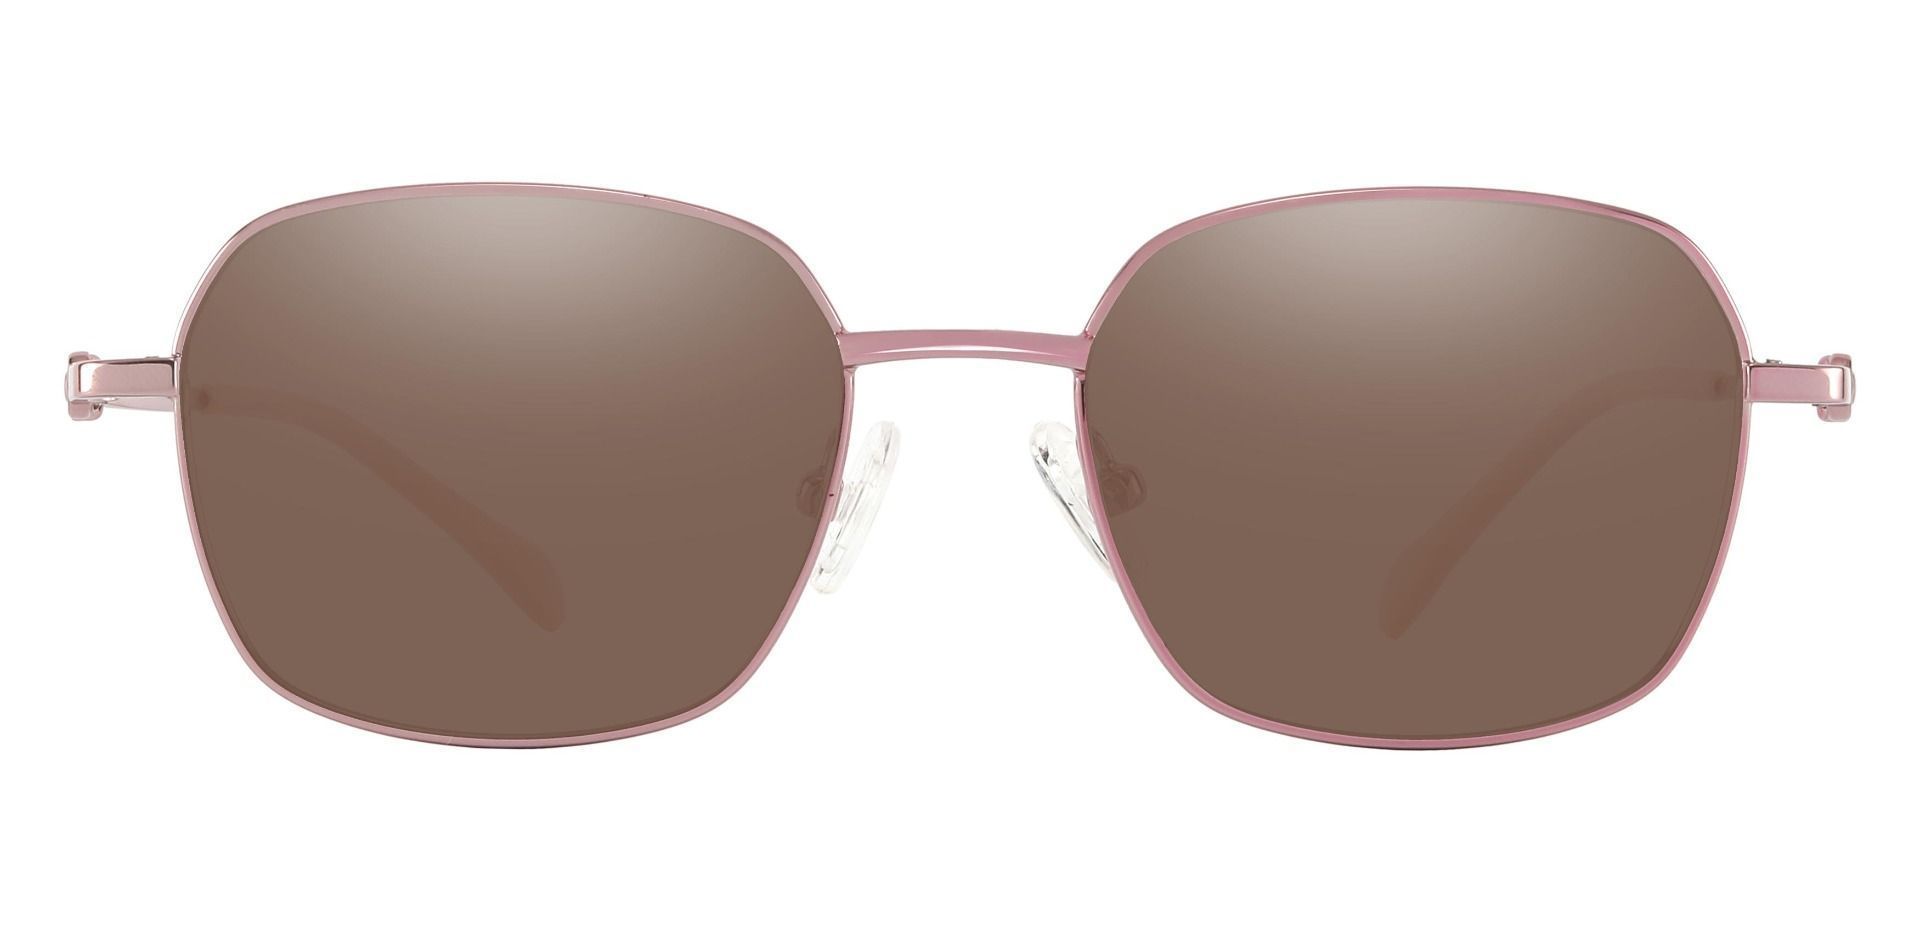 Averill Geometric Progressive Sunglasses - Rose Gold Frame With Brown Lenses